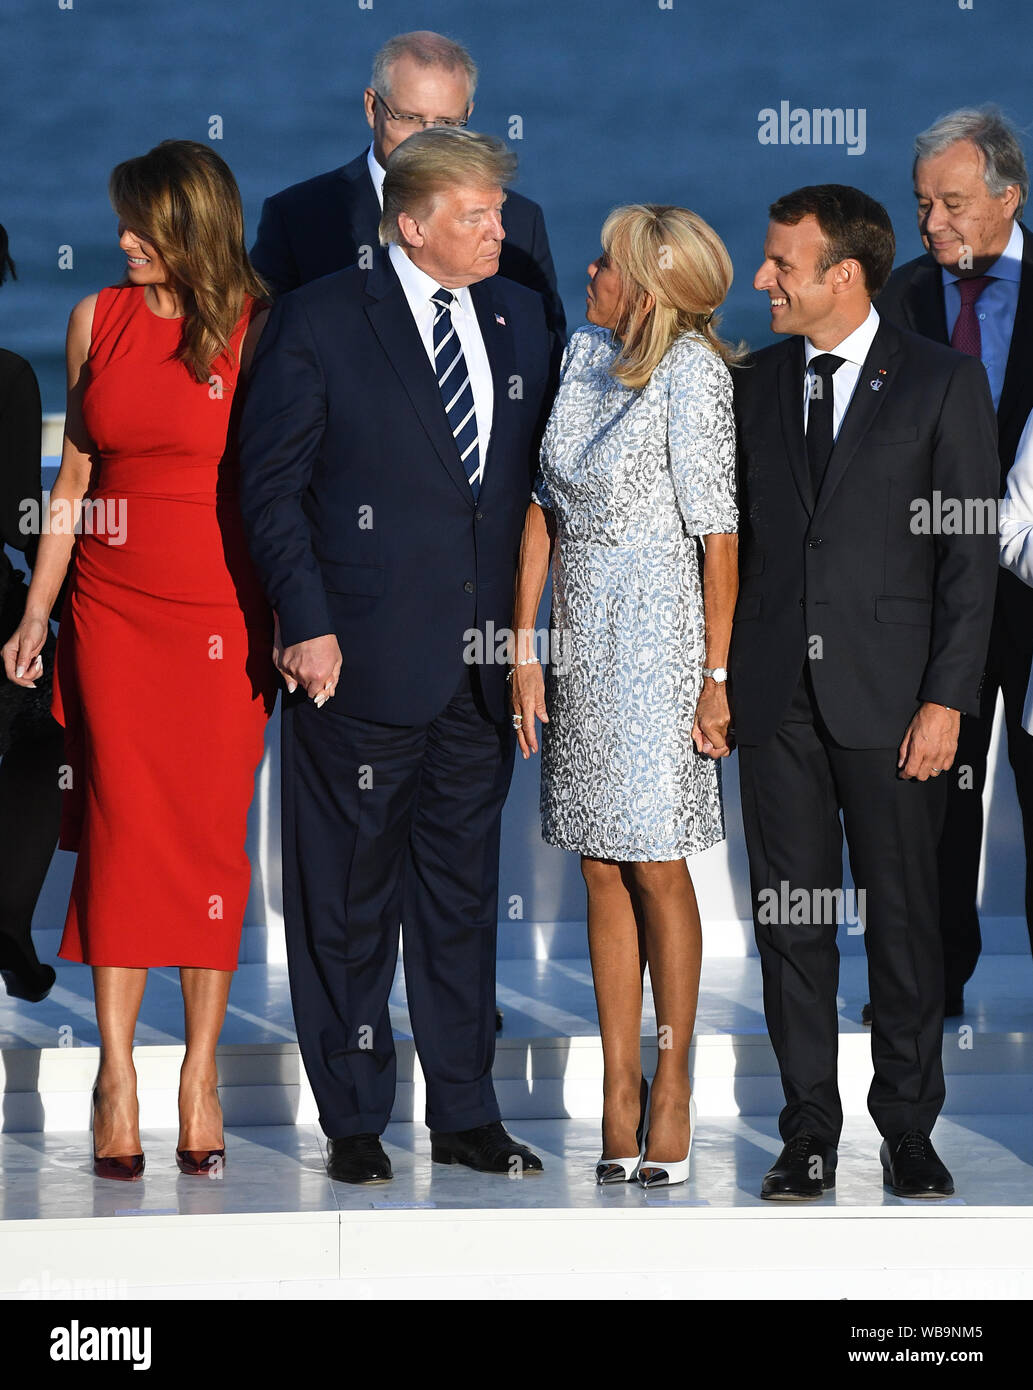 Melania Trump, Président des Etats-Unis, Donald Trump, Brigitte Macron, et le président français, Emmanuel Macron inscrivez-vous d'autres dirigeants du monde pour la photo de famille au sommet du G7 à Biarritz, France. Banque D'Images